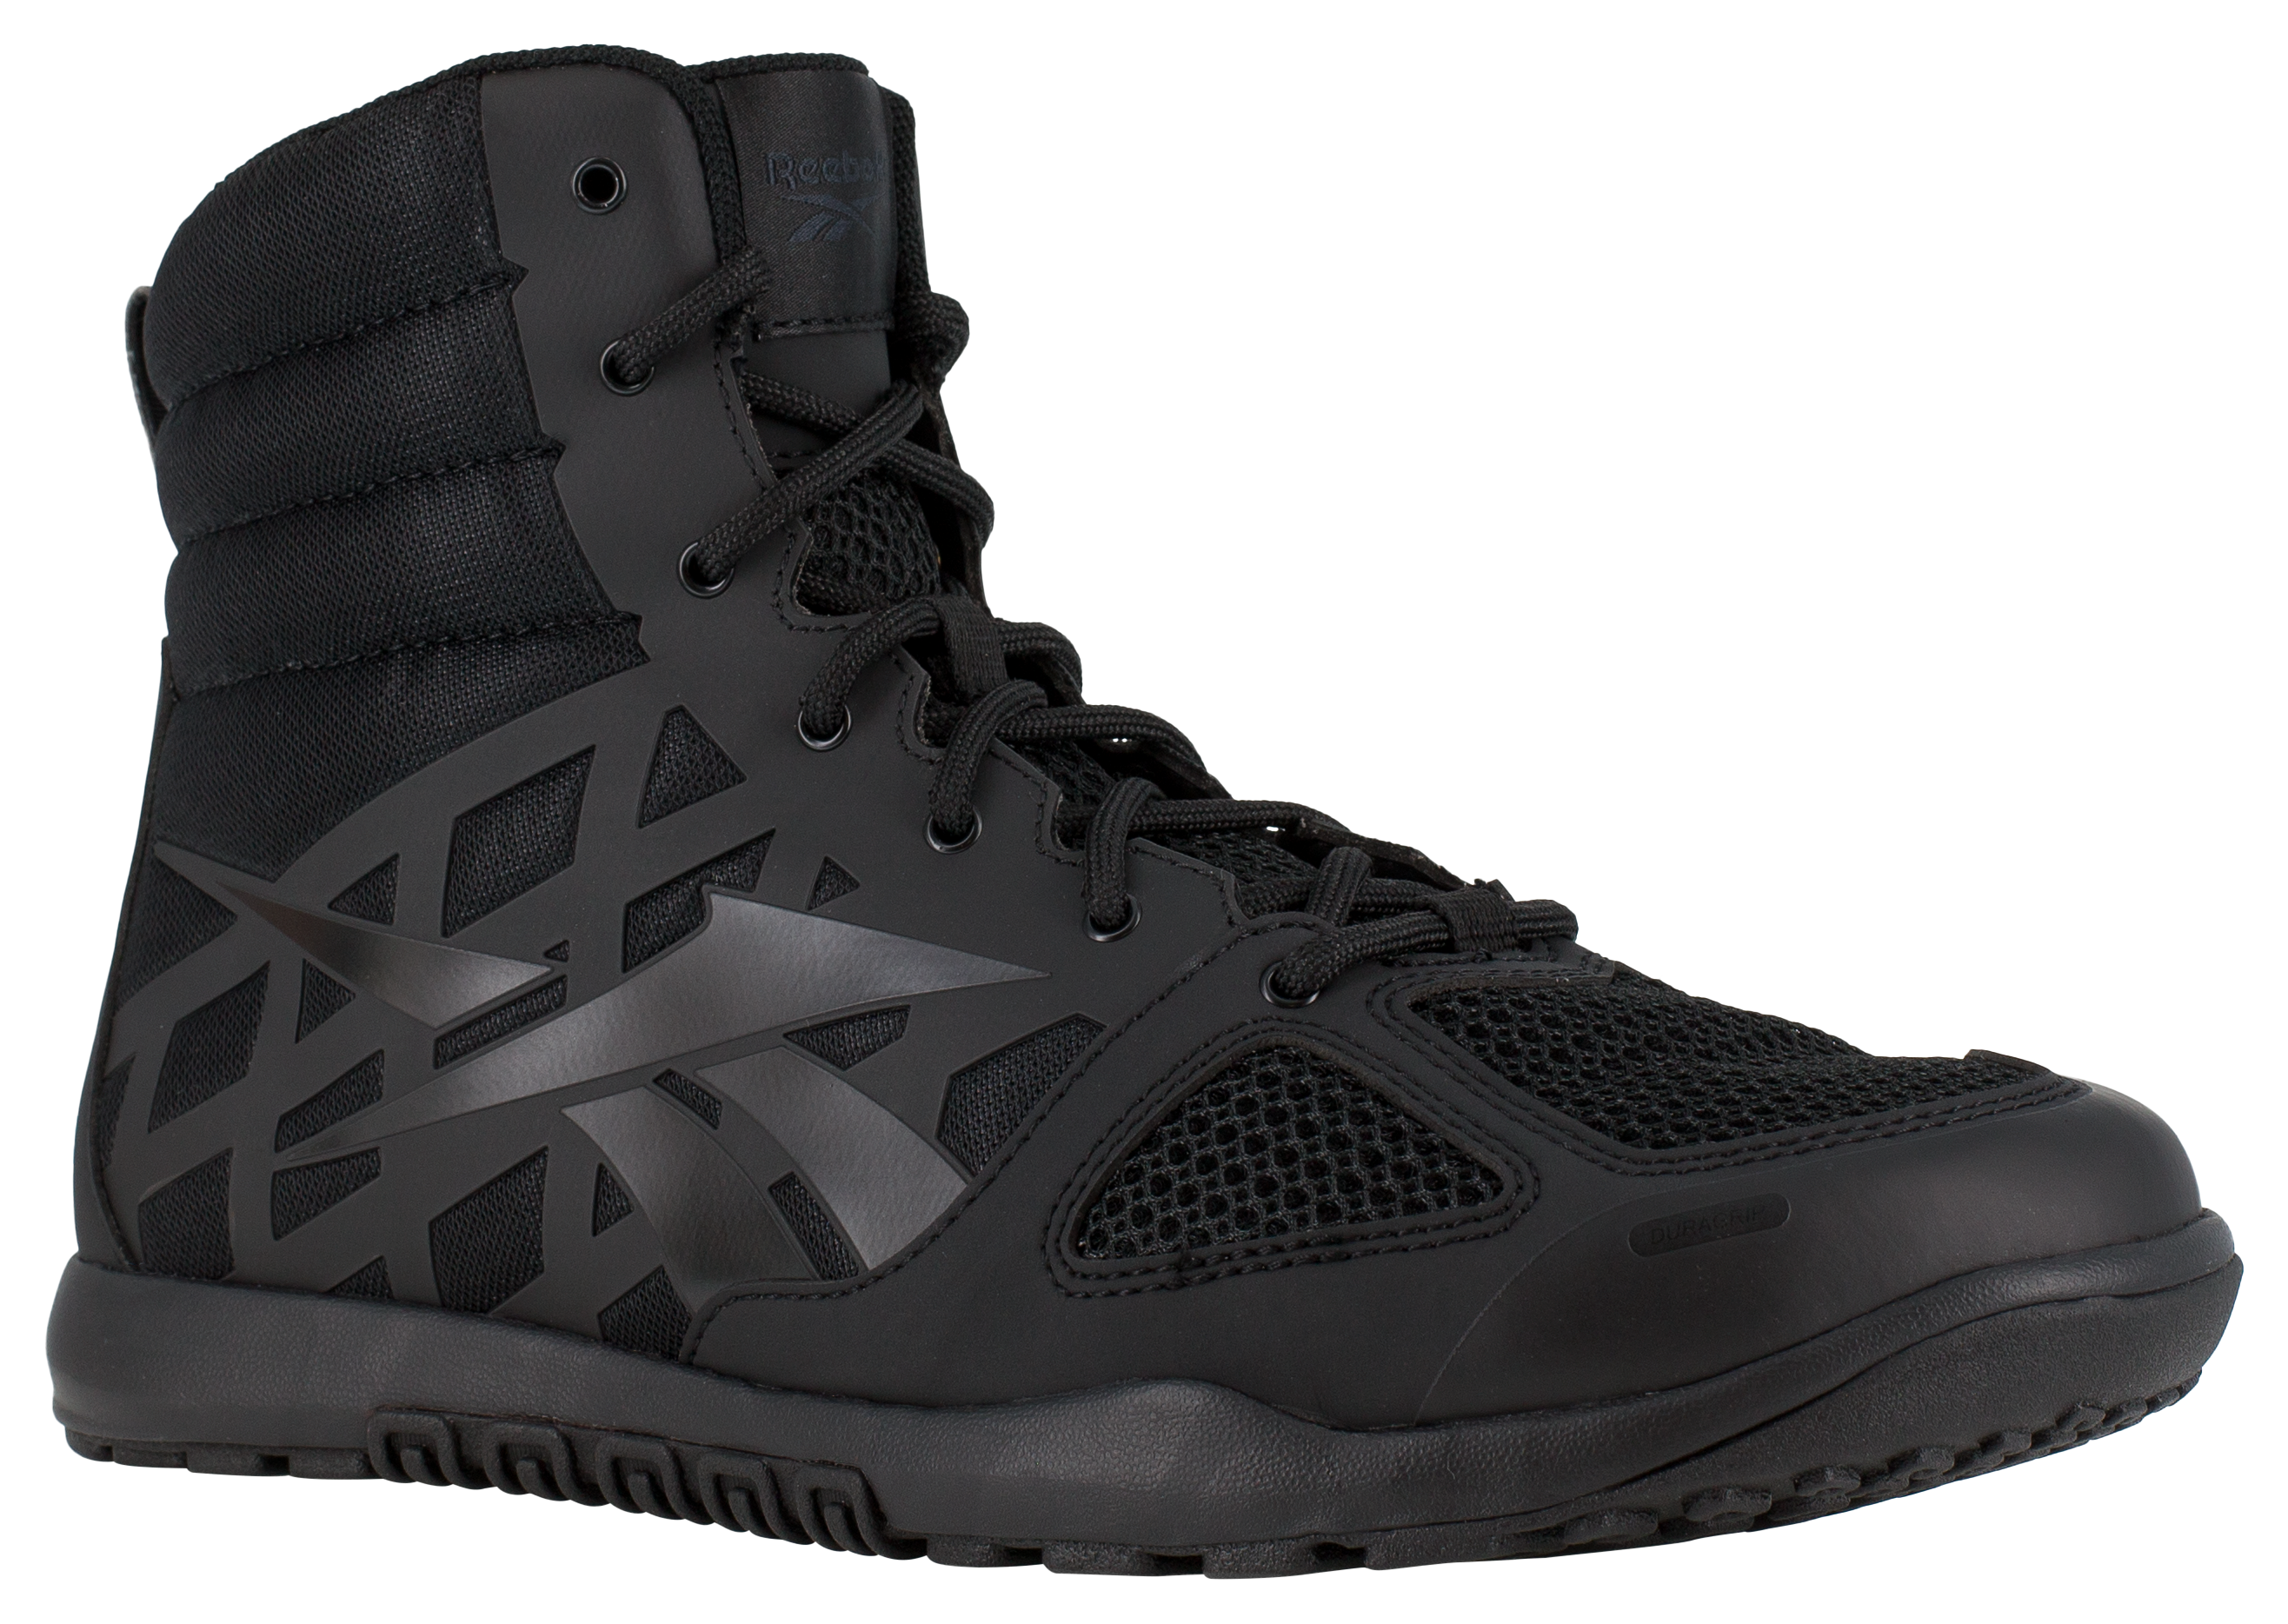 Reebok Nano Tactical 6″ Tactical Boots for Men - Black - 8.5M